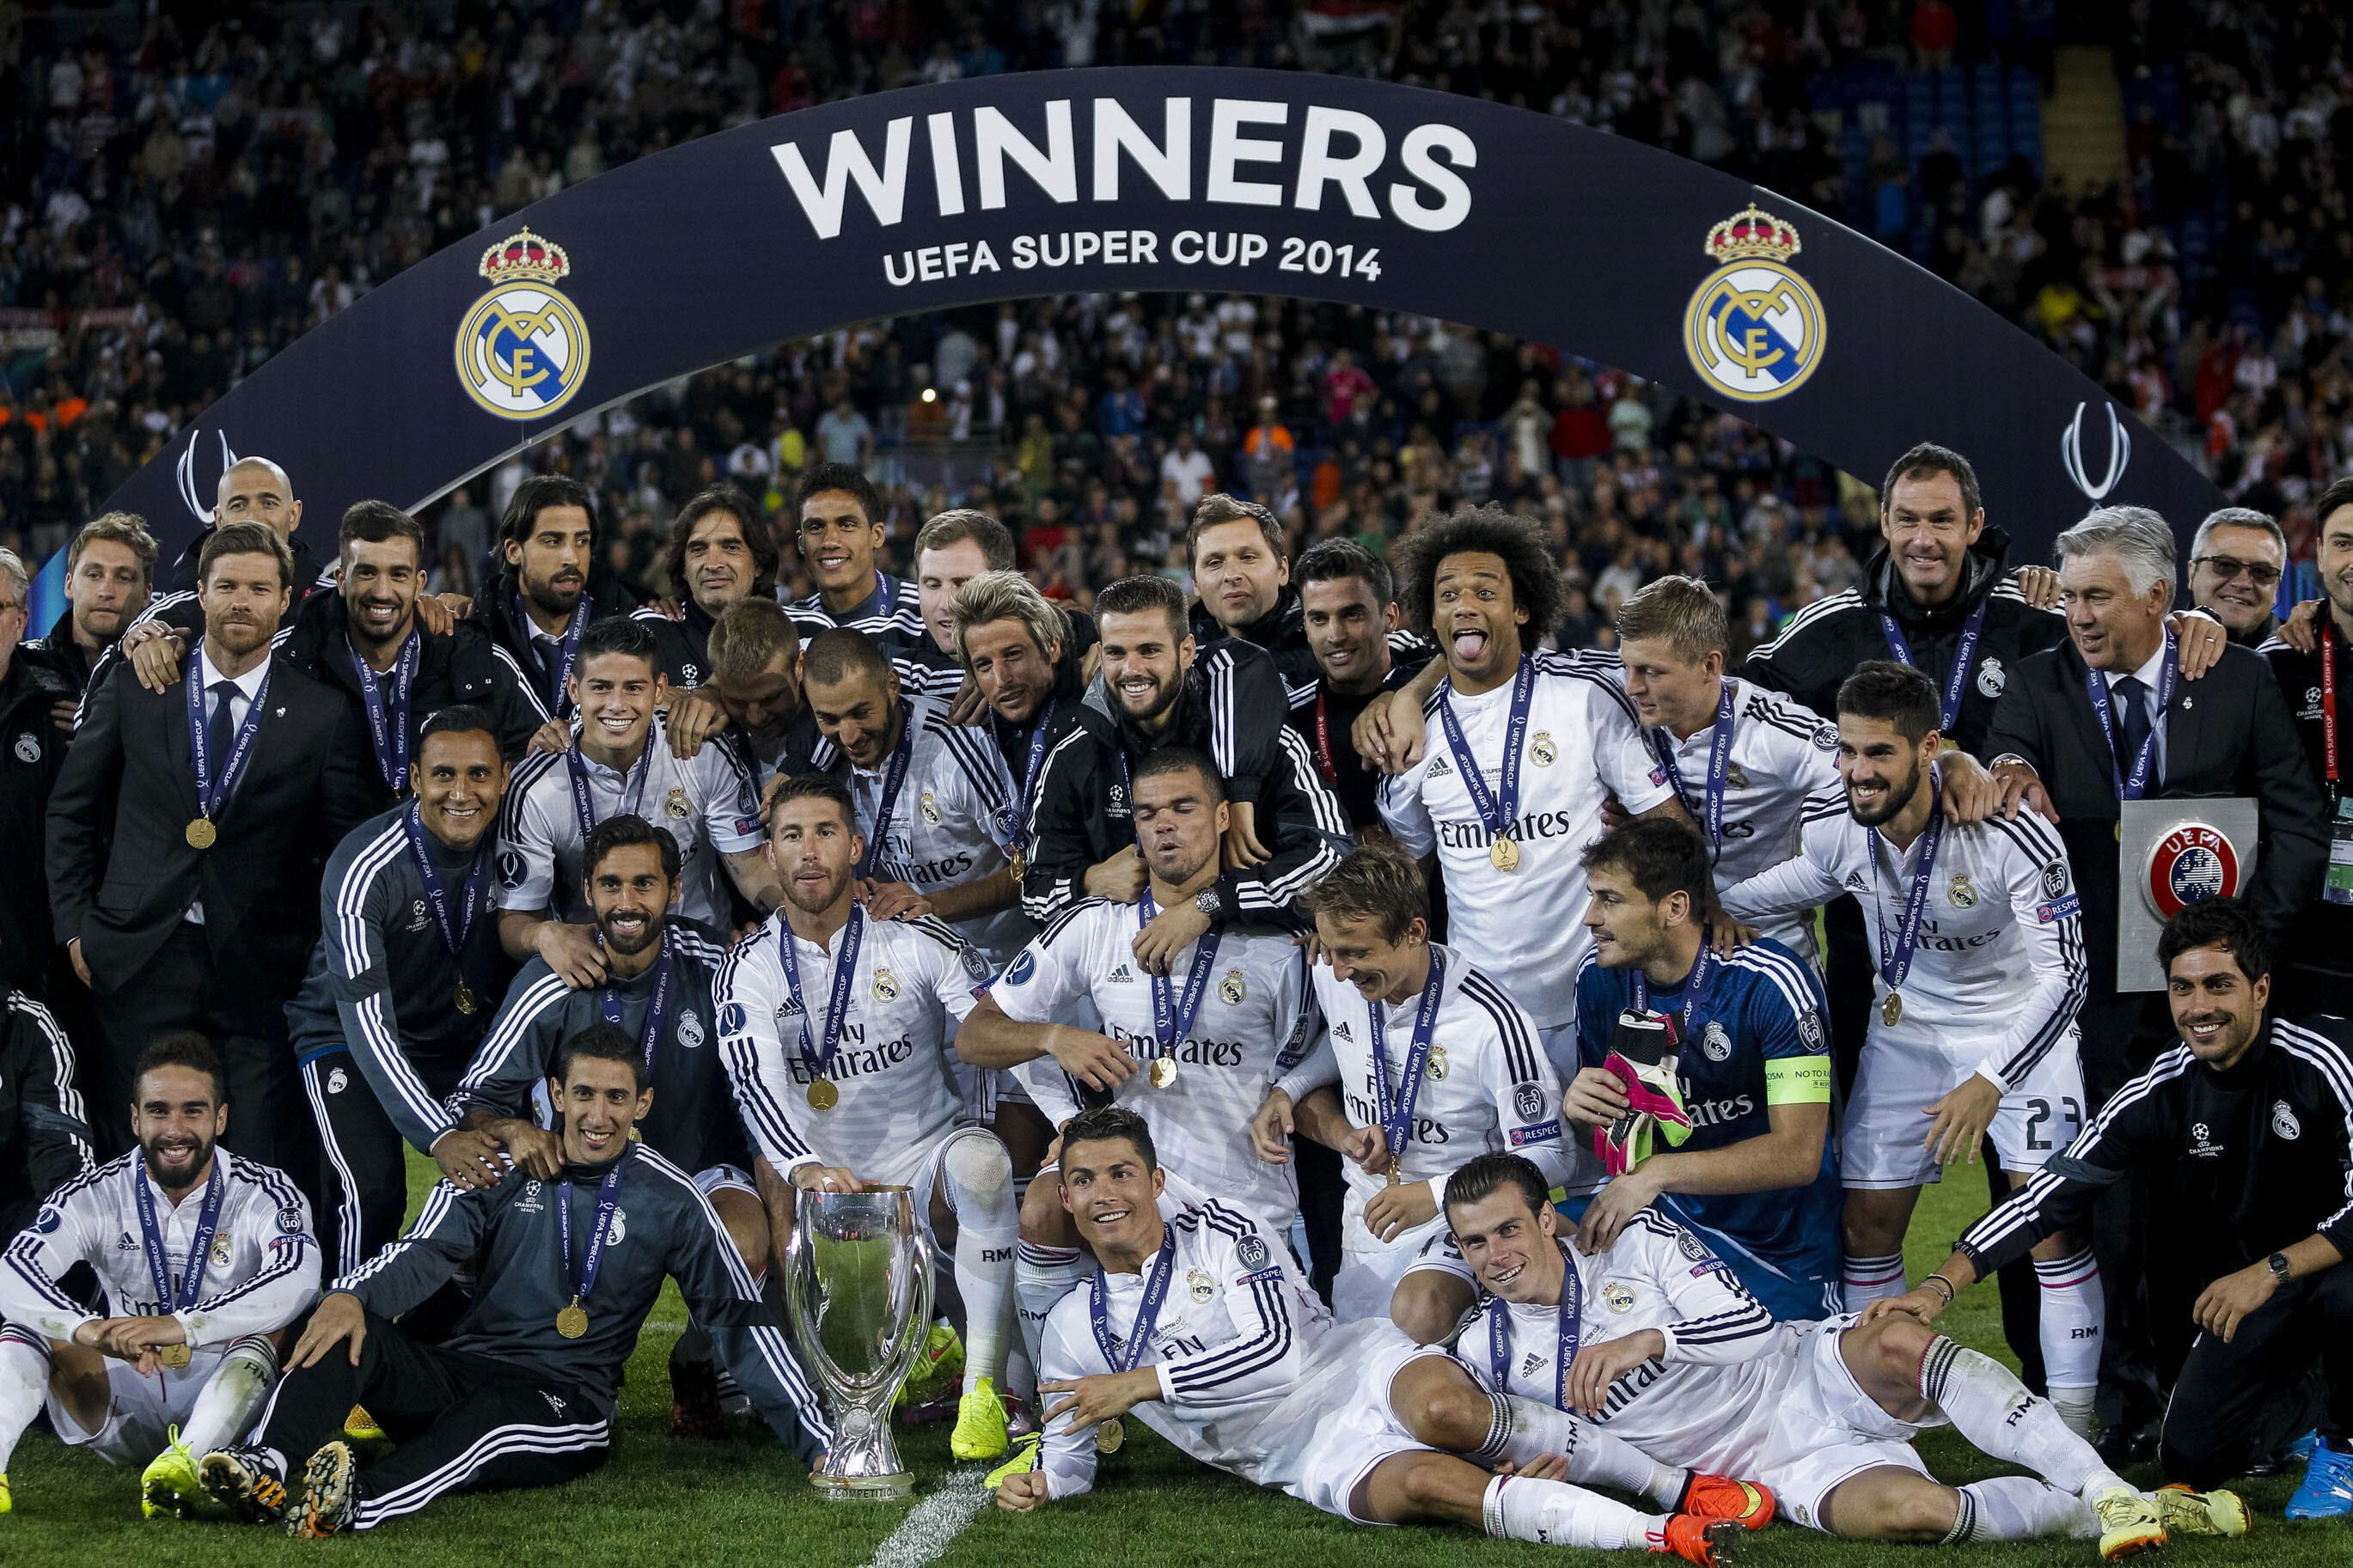 El Real Madrid, supercampeón de Europa y de la tele